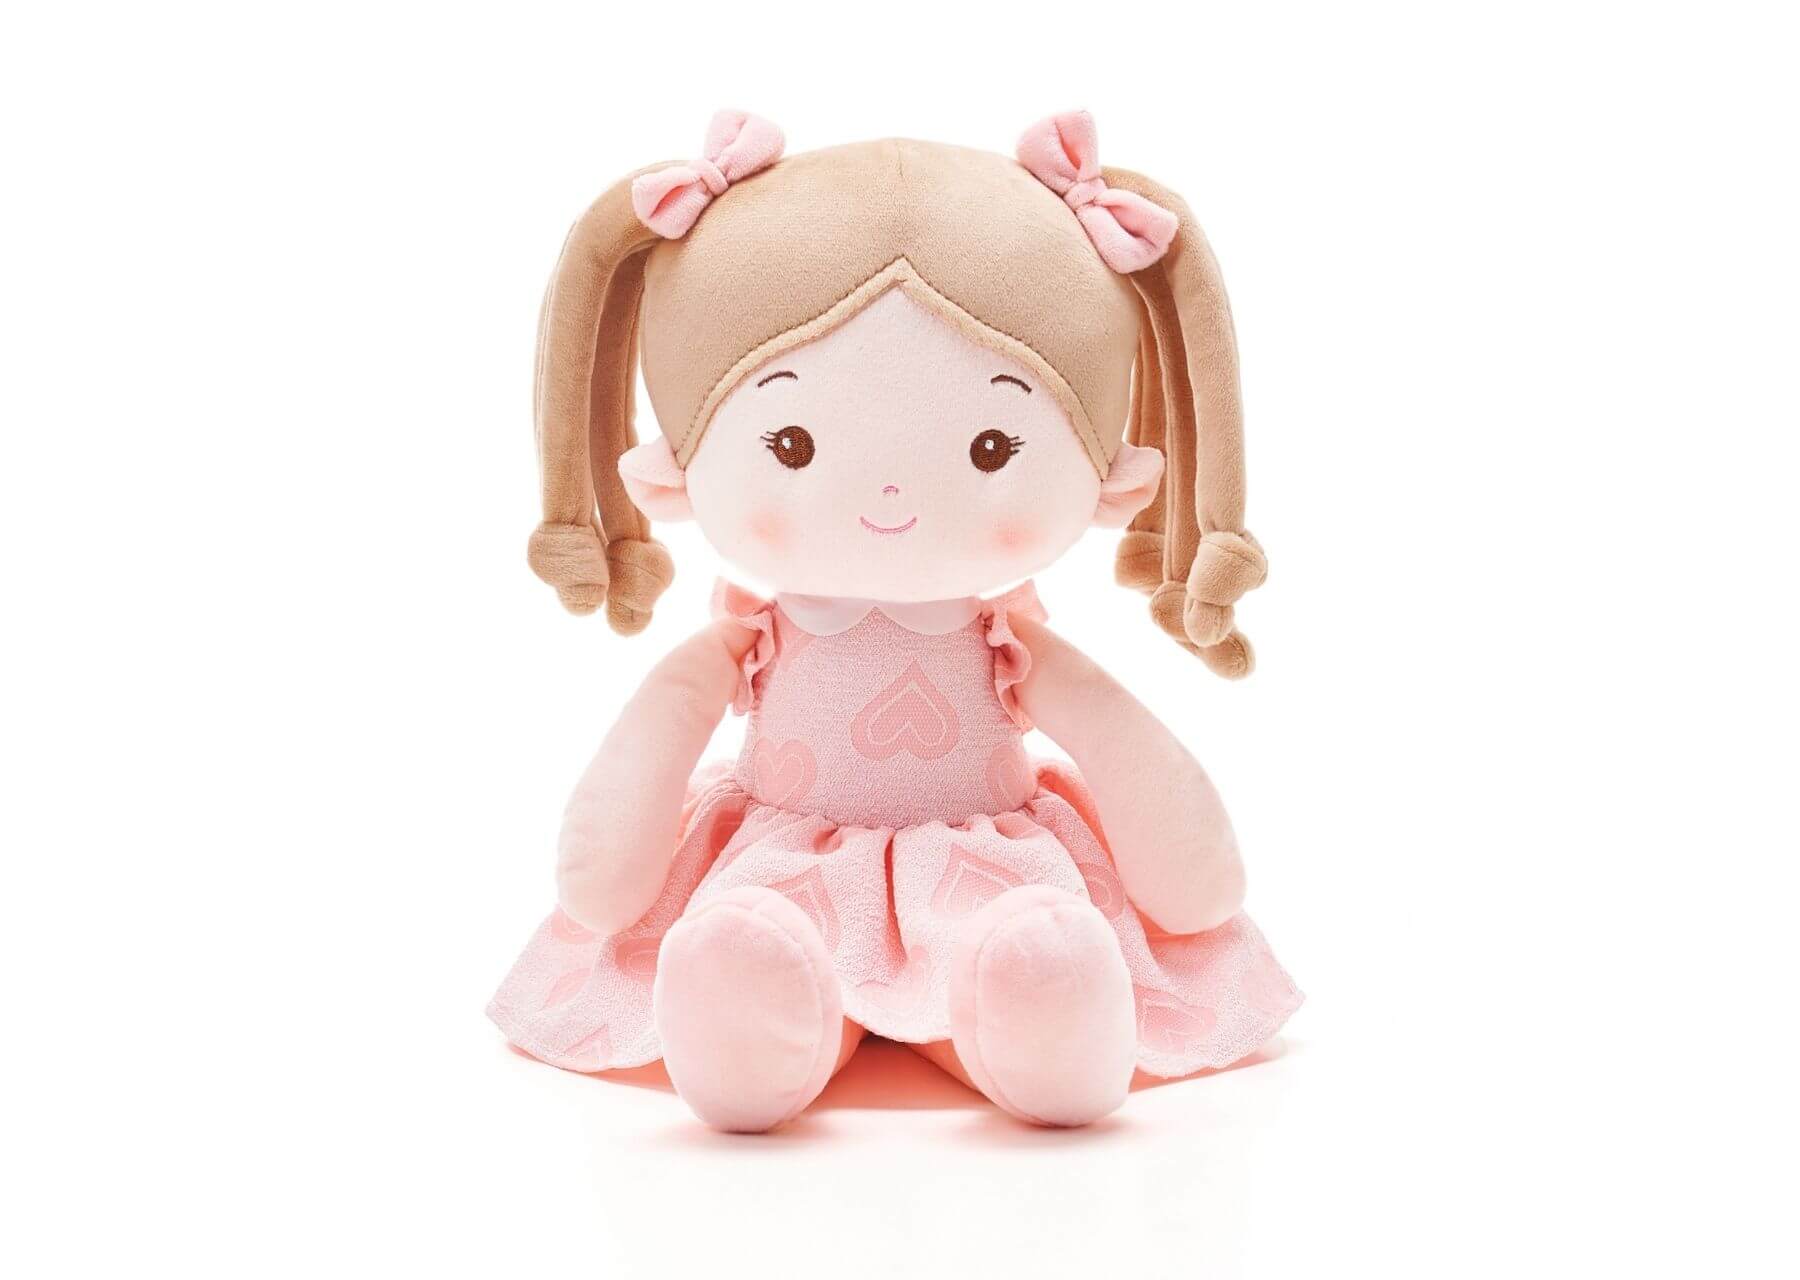 Leyadoll Soft Plush Personalized Leya Doll, My First Baby Doll - Leya Doll